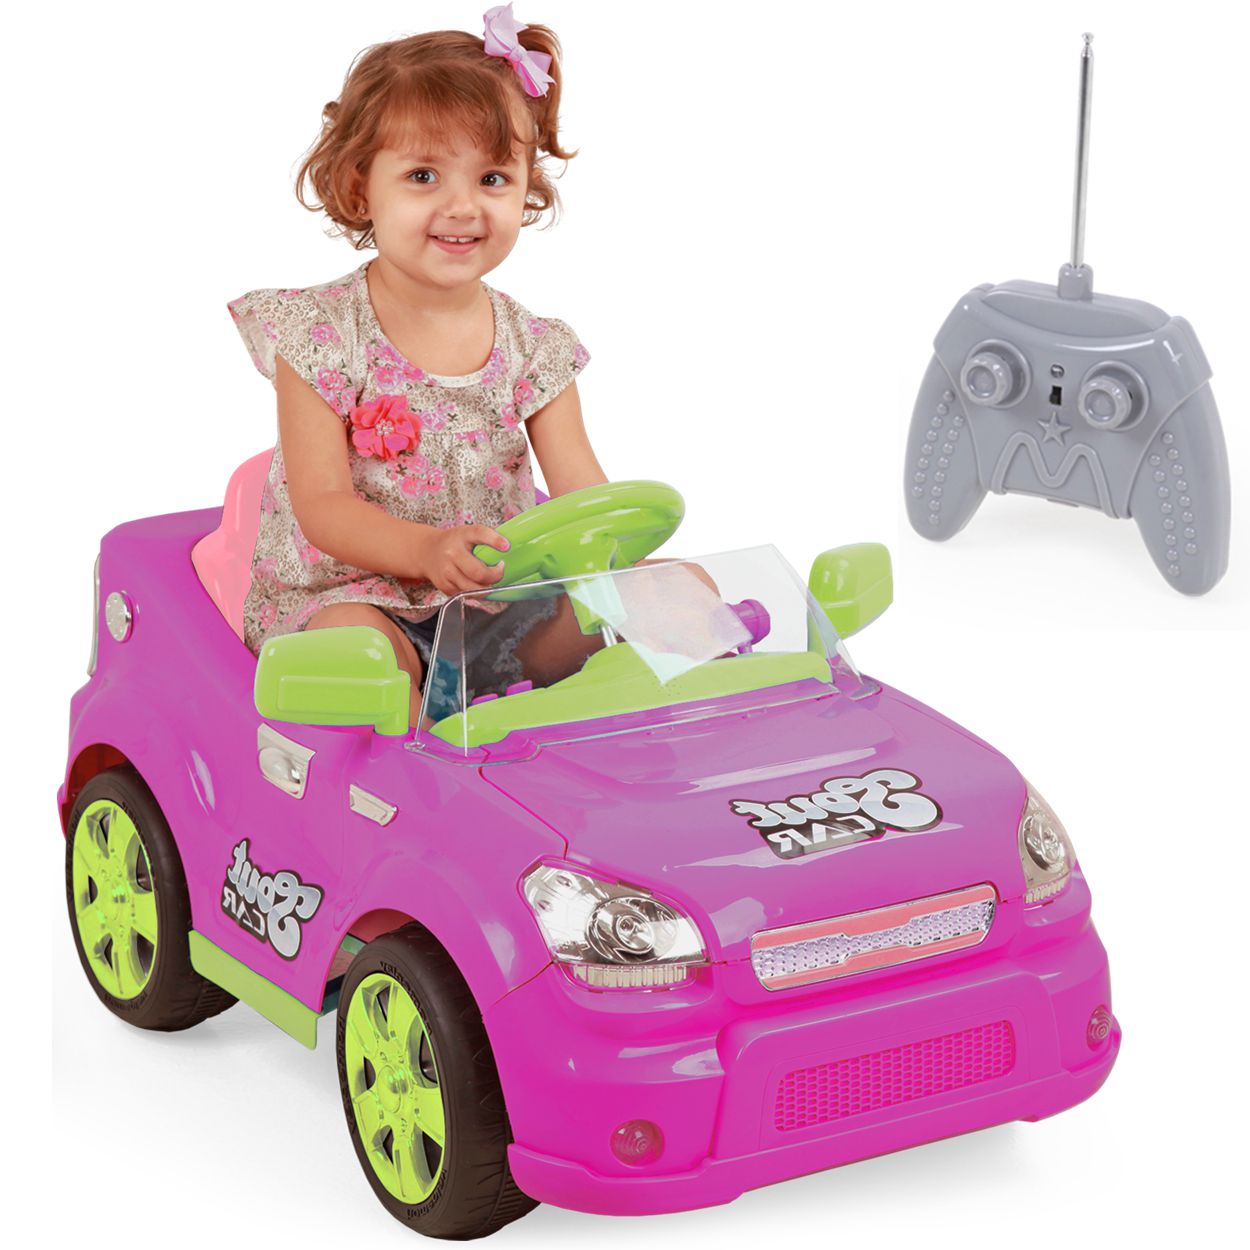 O kart elétrico infantil pode levar pessoas, carro com controle remoto de  carregamento, brinquedo de carrinho de bebê, 3-6-8 anos de idade